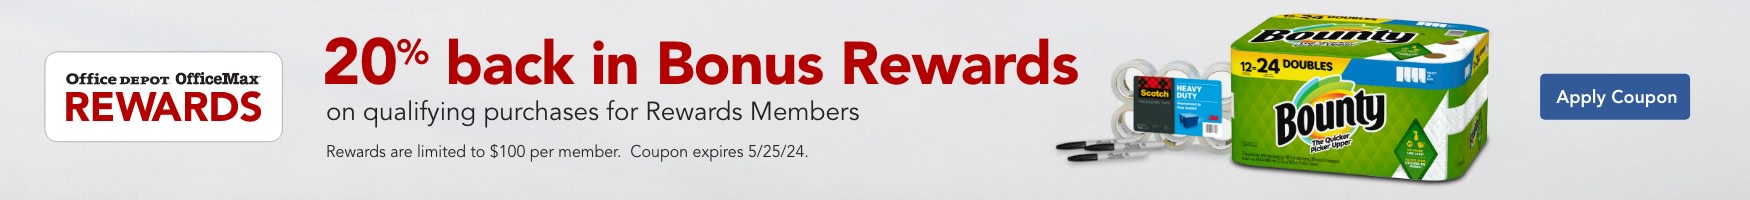 20% Back in Bonus Rewards